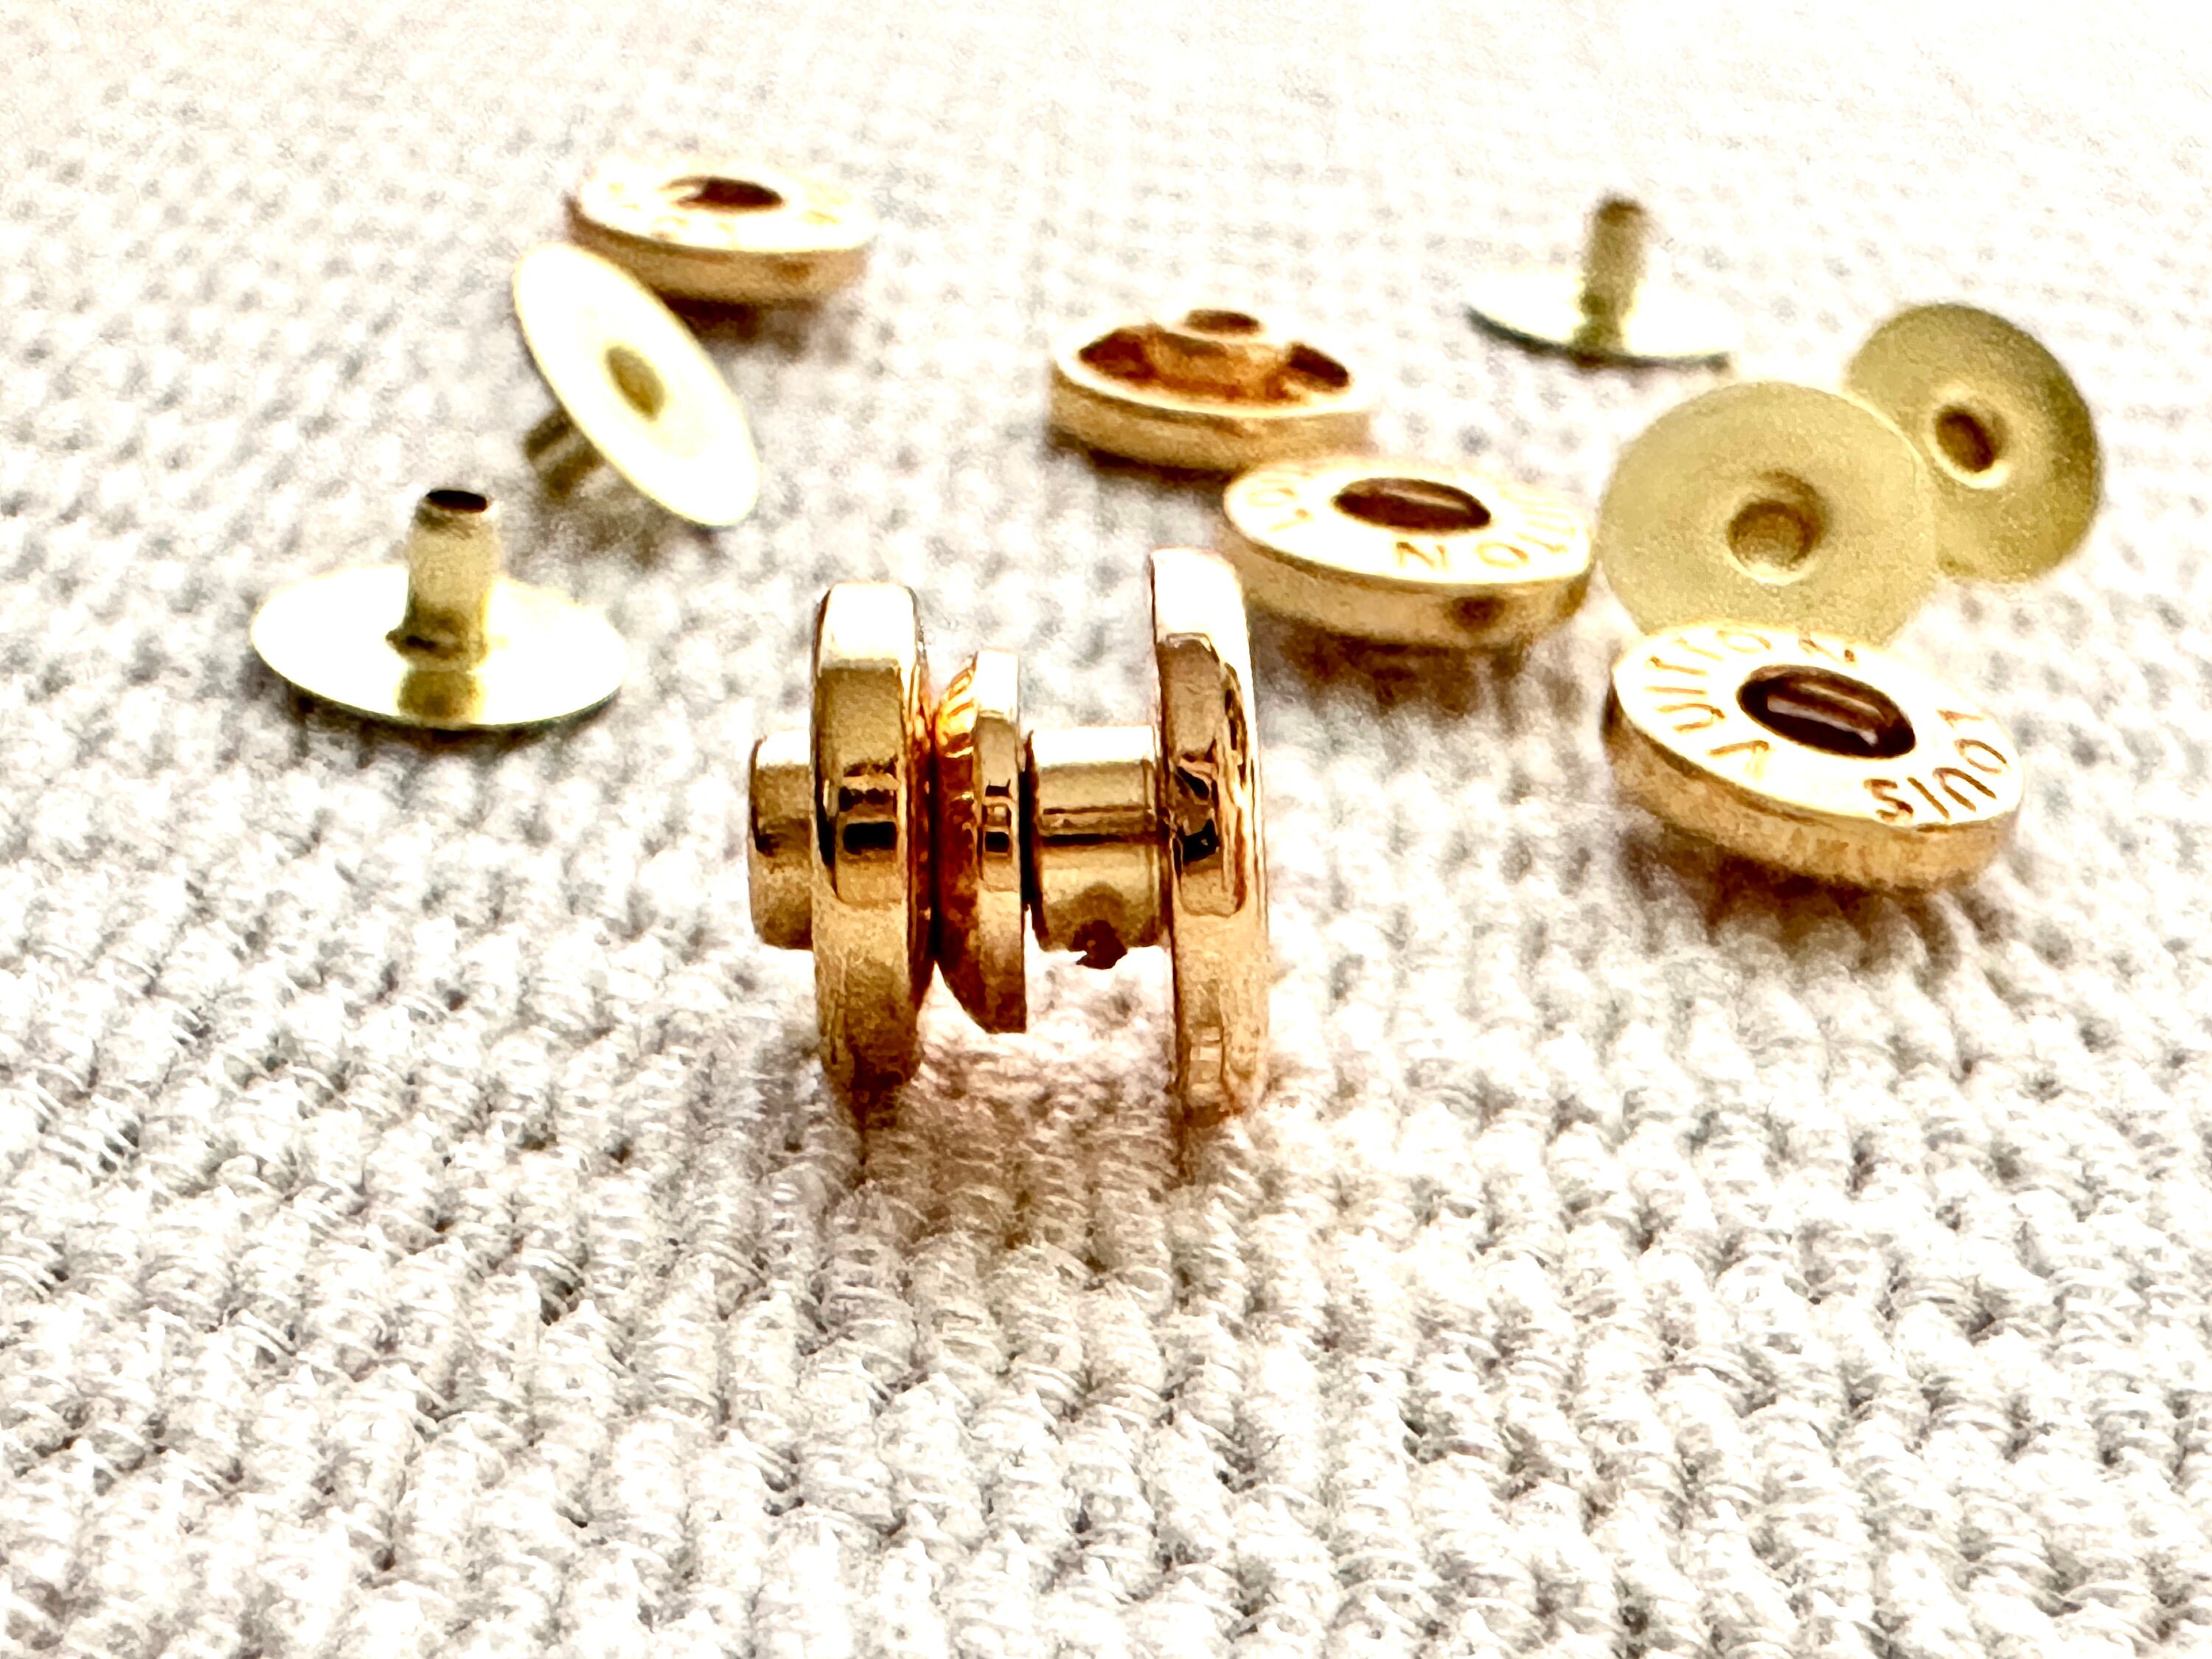 Authentic Louis Vuitton 10mm gold Snap Button Rivet For Replacement Parts